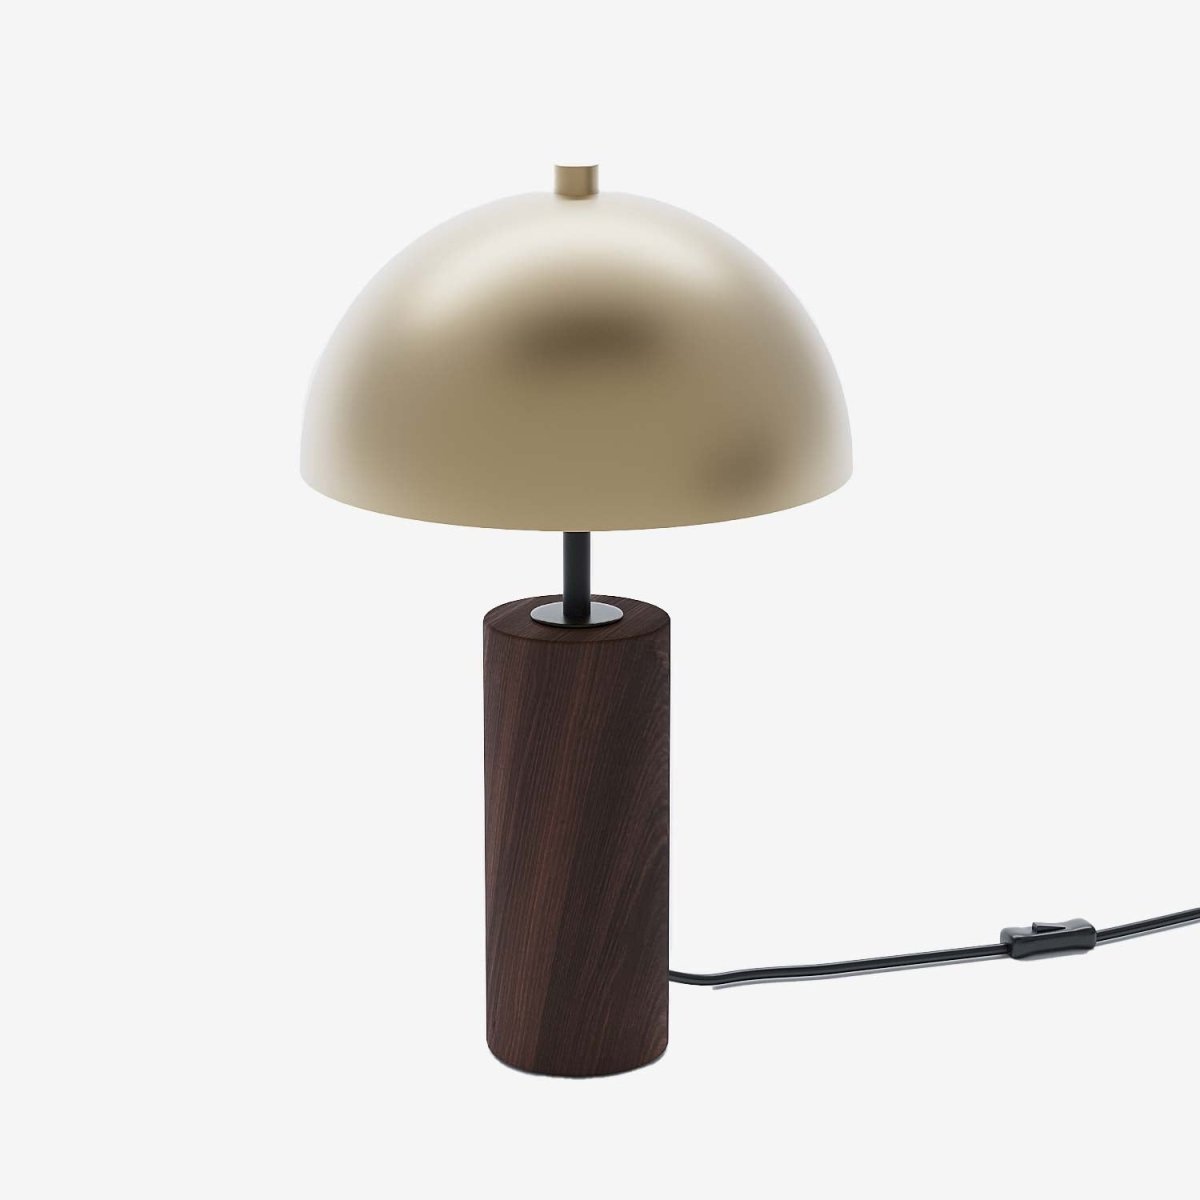 Lampe de bureau abat-jour cloche métal doré bois style vintage industriel - Potiron Paris, le luminaire design de la décoration d'intérieur chic et moderne